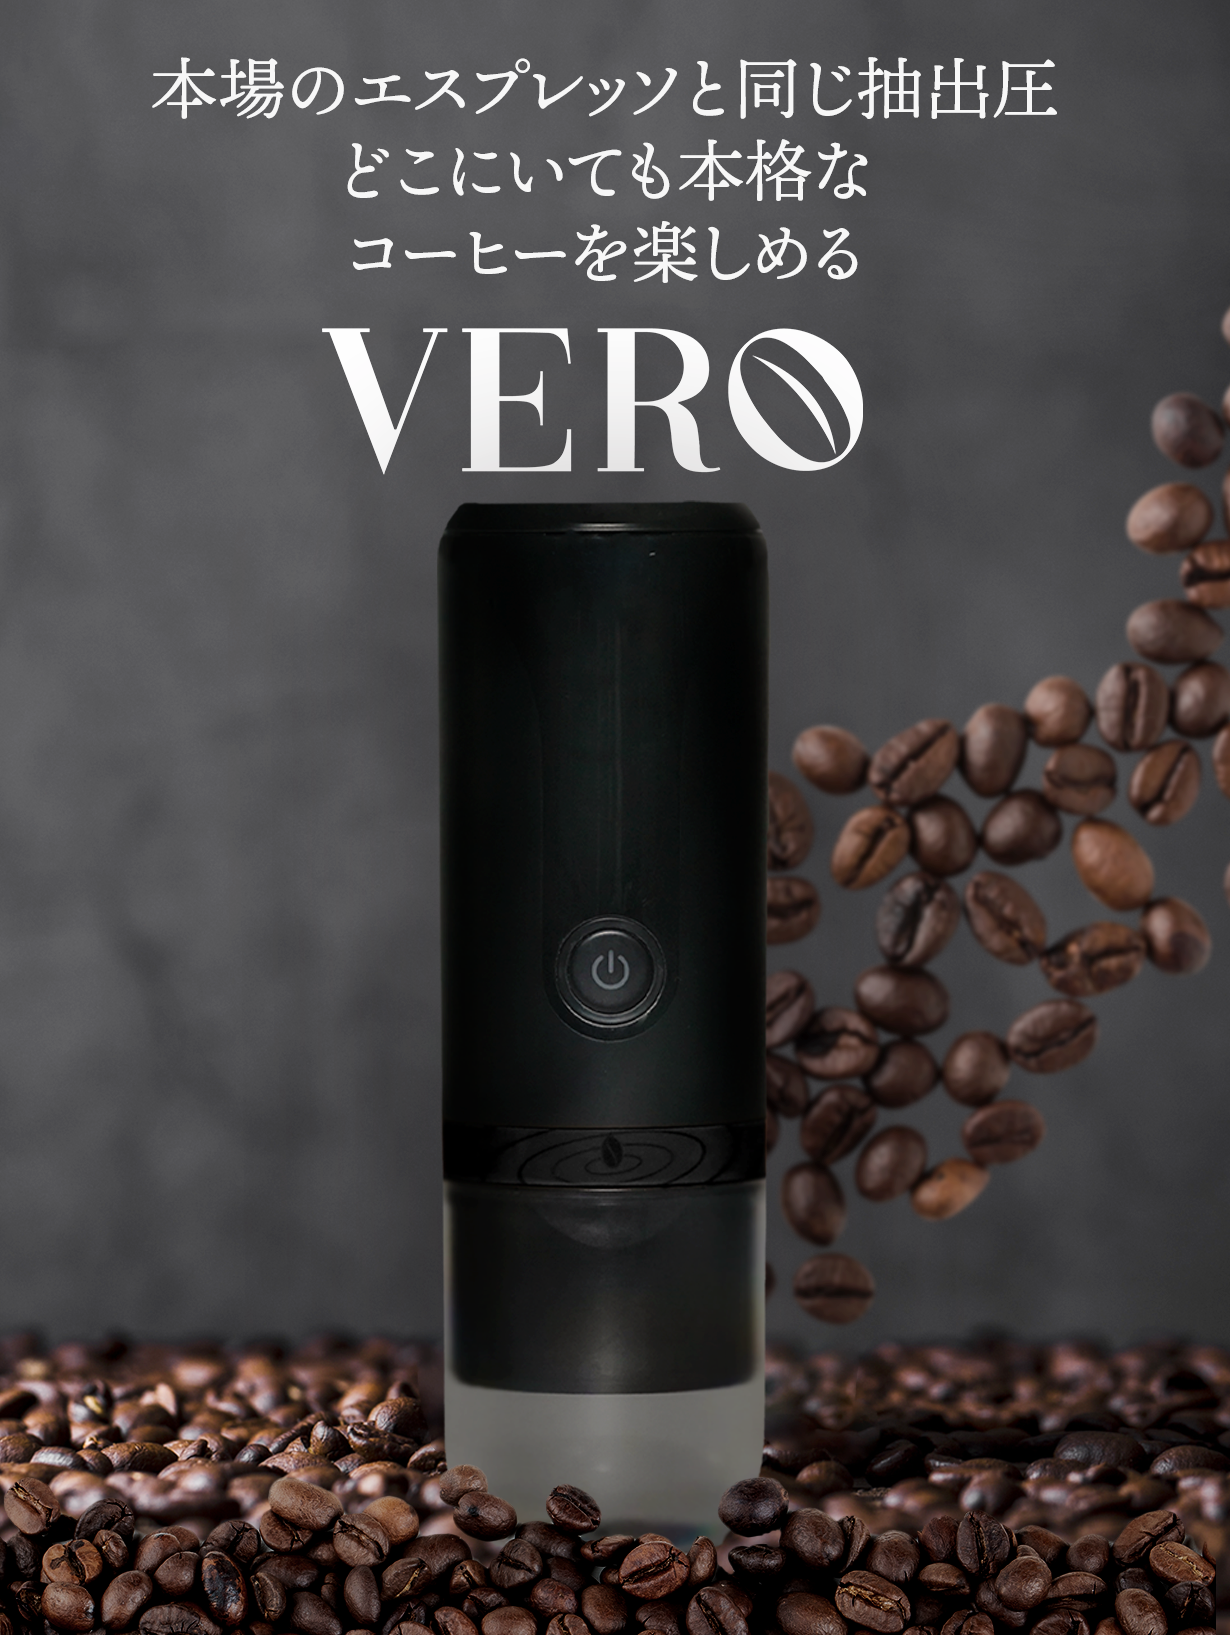 ポータブルエスプレッソ/コーヒーメーカー「VERO」